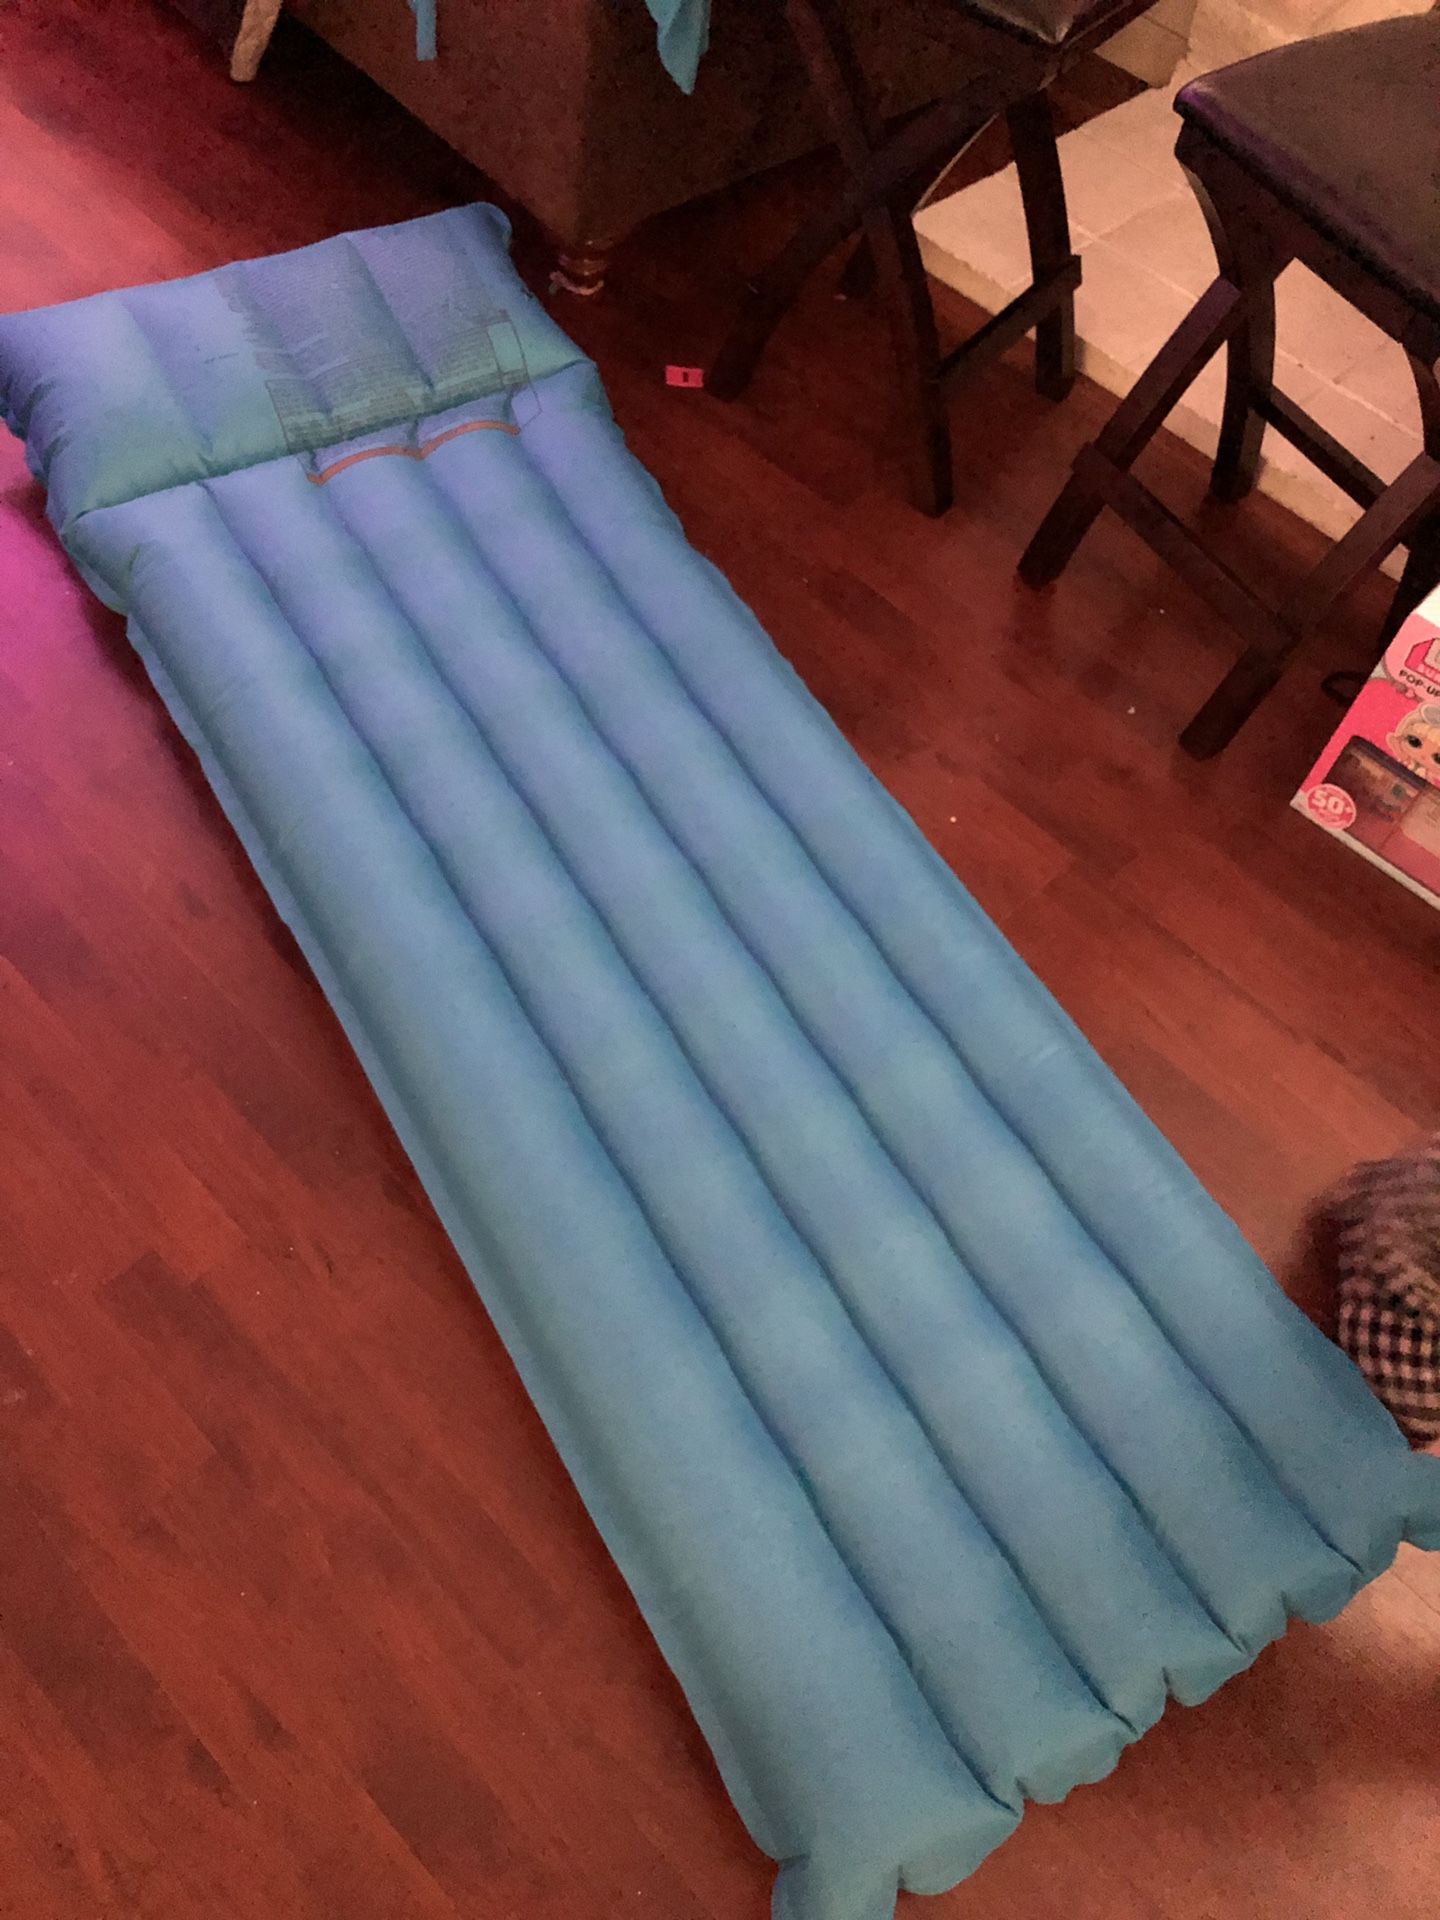 3 air mattresses.